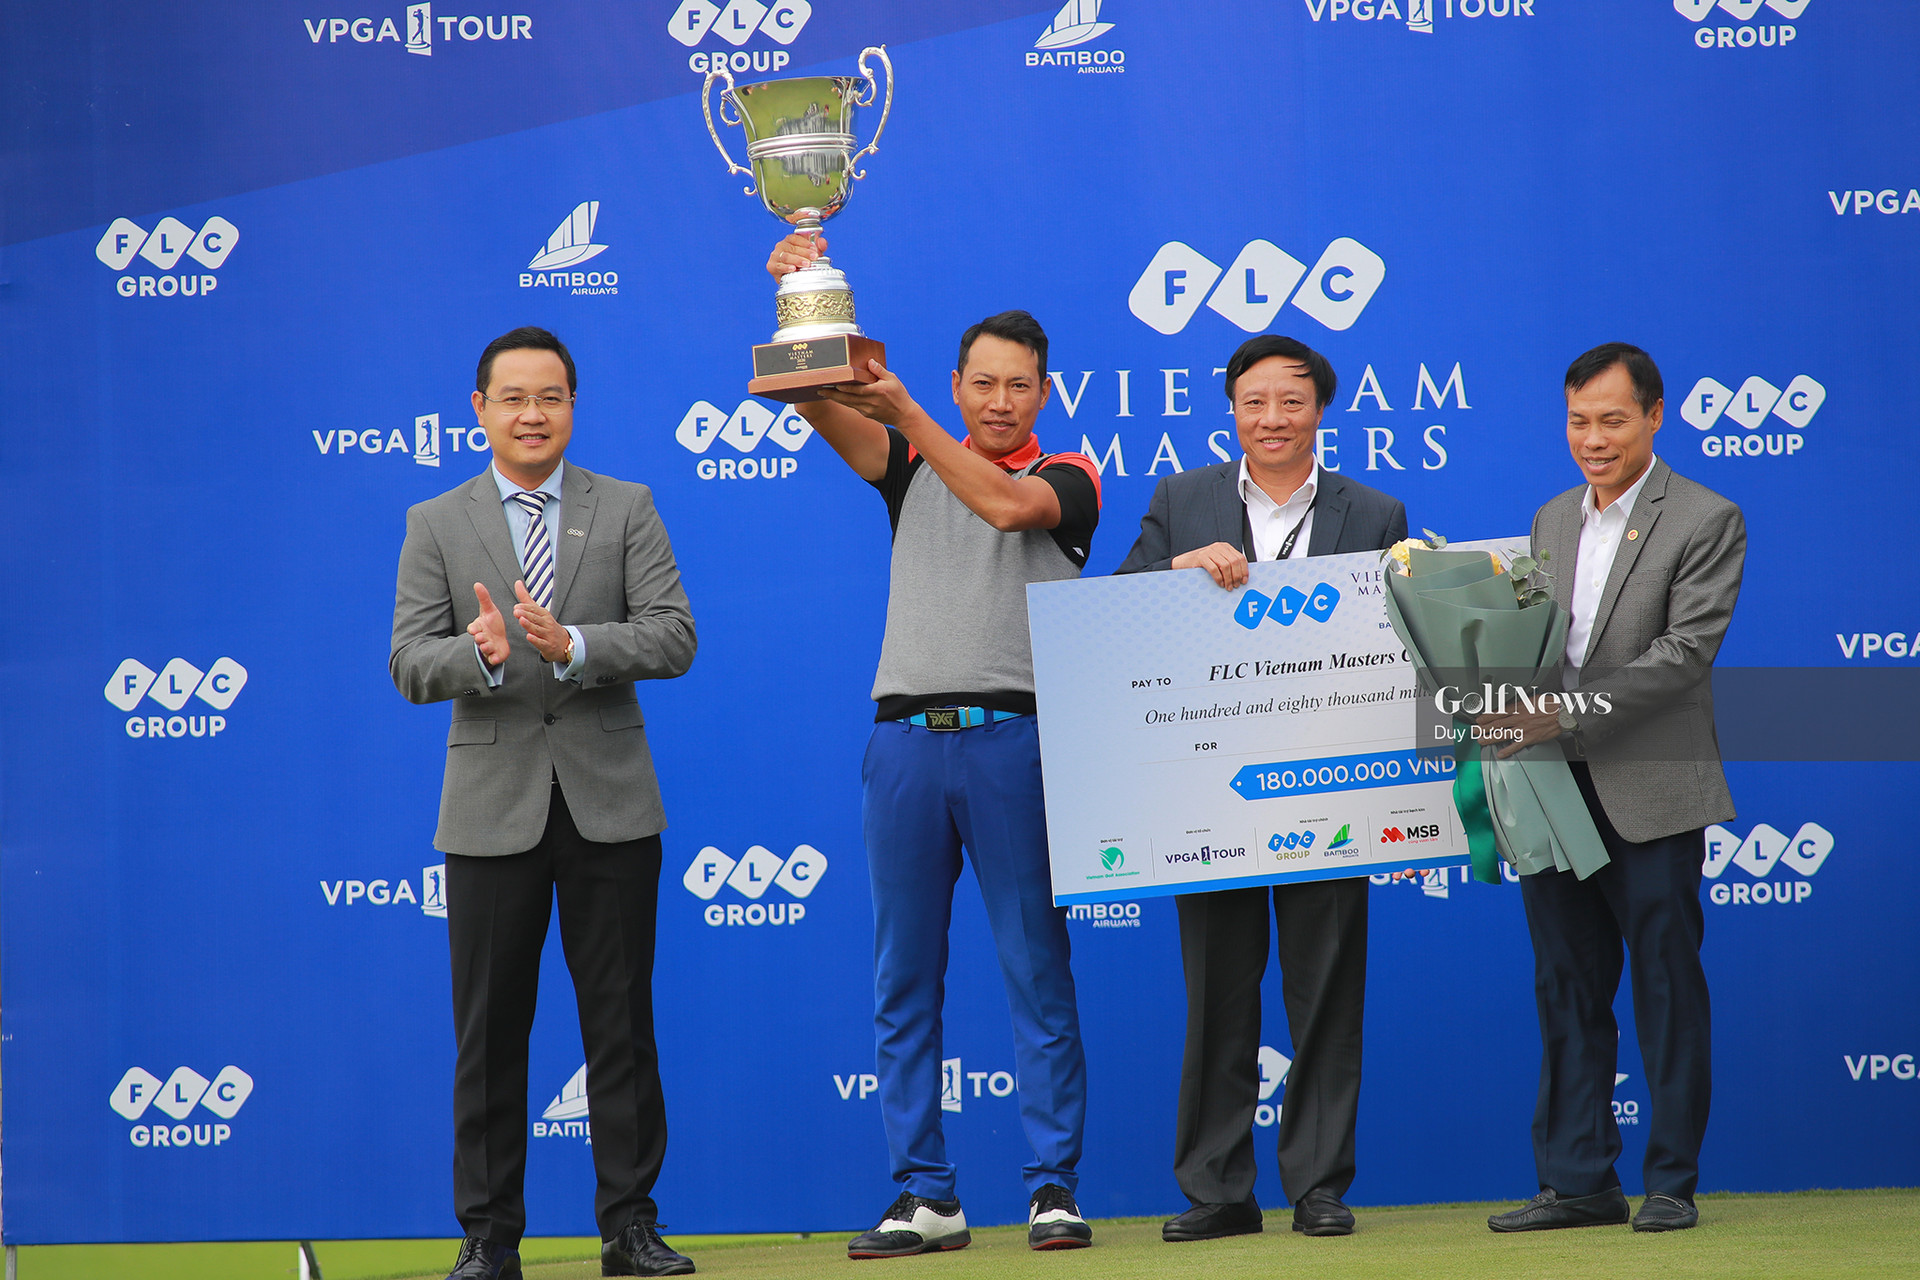 Đỗ Hồng Giang vô địch FLC Vietnam Masters 2020 Presented by Bamboo Airways - Ảnh 2.